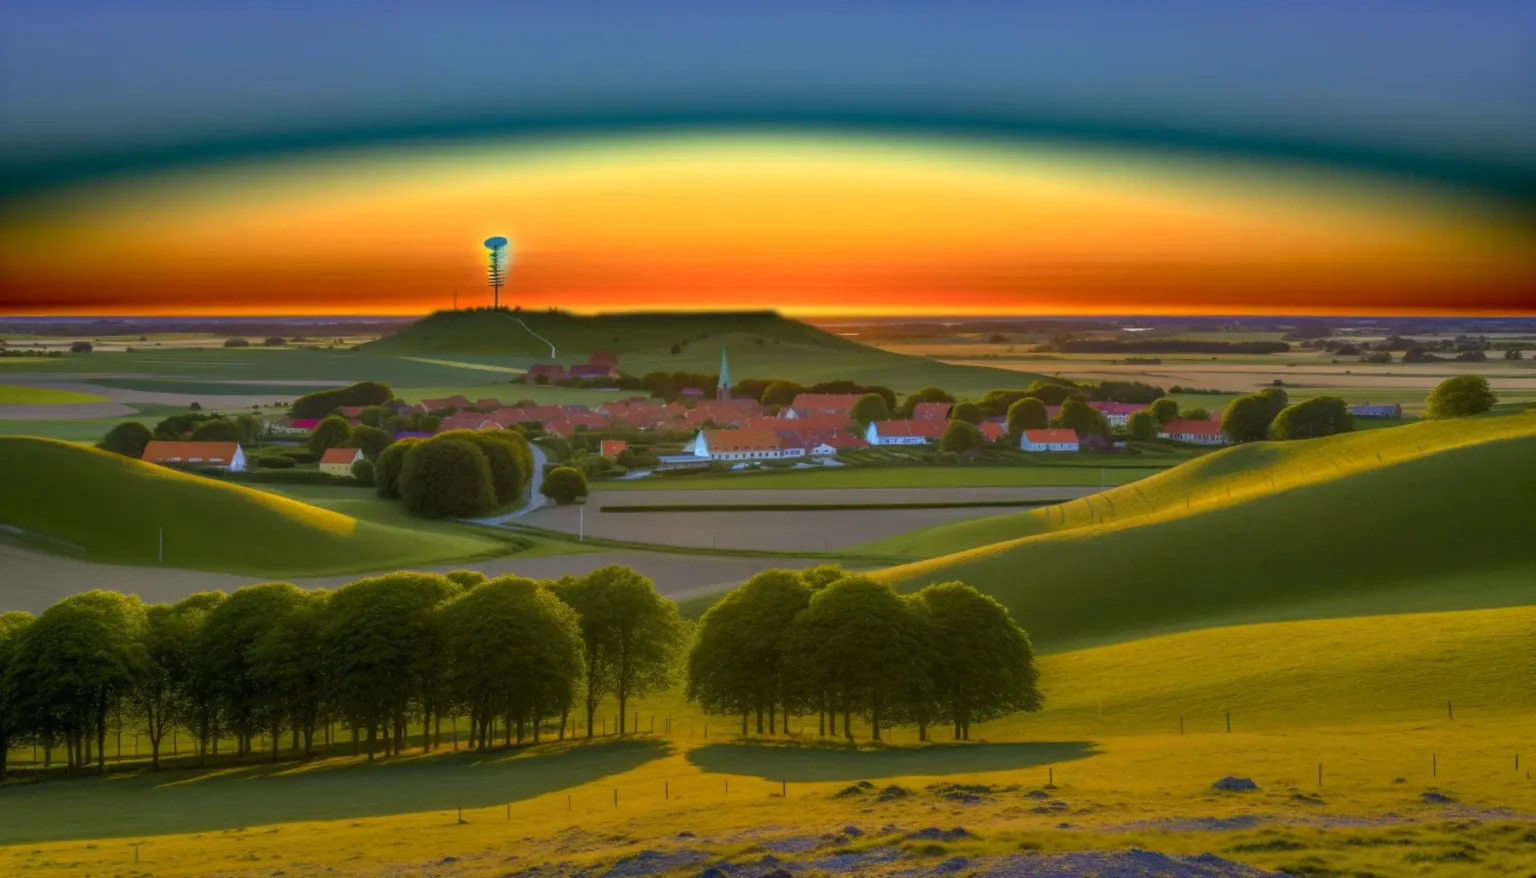 Landschaftsaufnahme bei Sonnenuntergang mit Blick auf eine kleine Ortschaft, umgeben von grünen Hügeln und Feldern. Ein markanter Wasserturm steht auf einem Hügel im Hintergrund. Der Himmel zeigt leuchtende Farben von Orange über Gelb bis Blau.